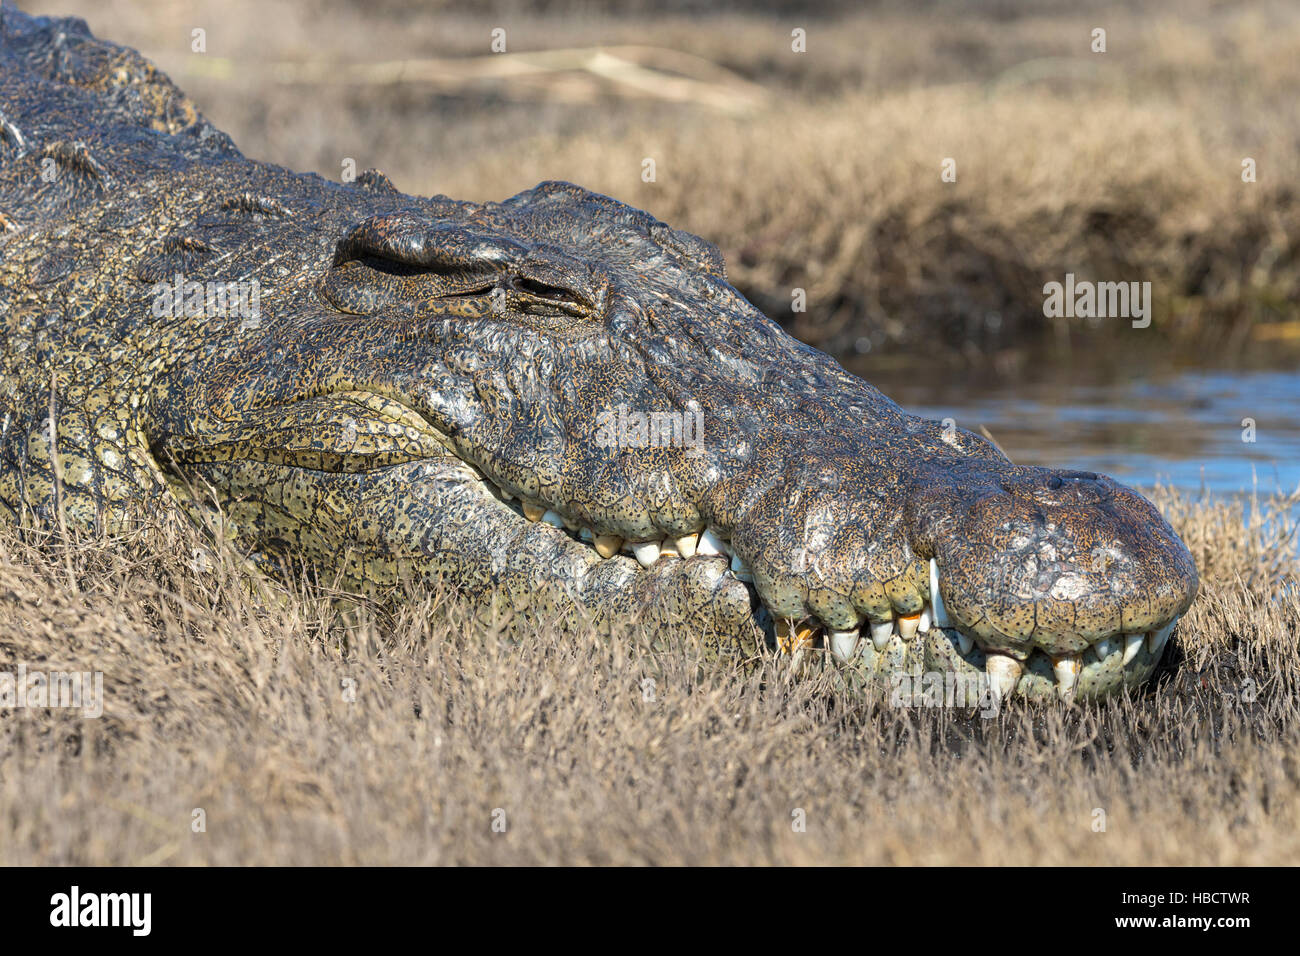 Le crocodile du Nil (Crocodylus niloticus), rivière Chobe, au Botswana Banque D'Images